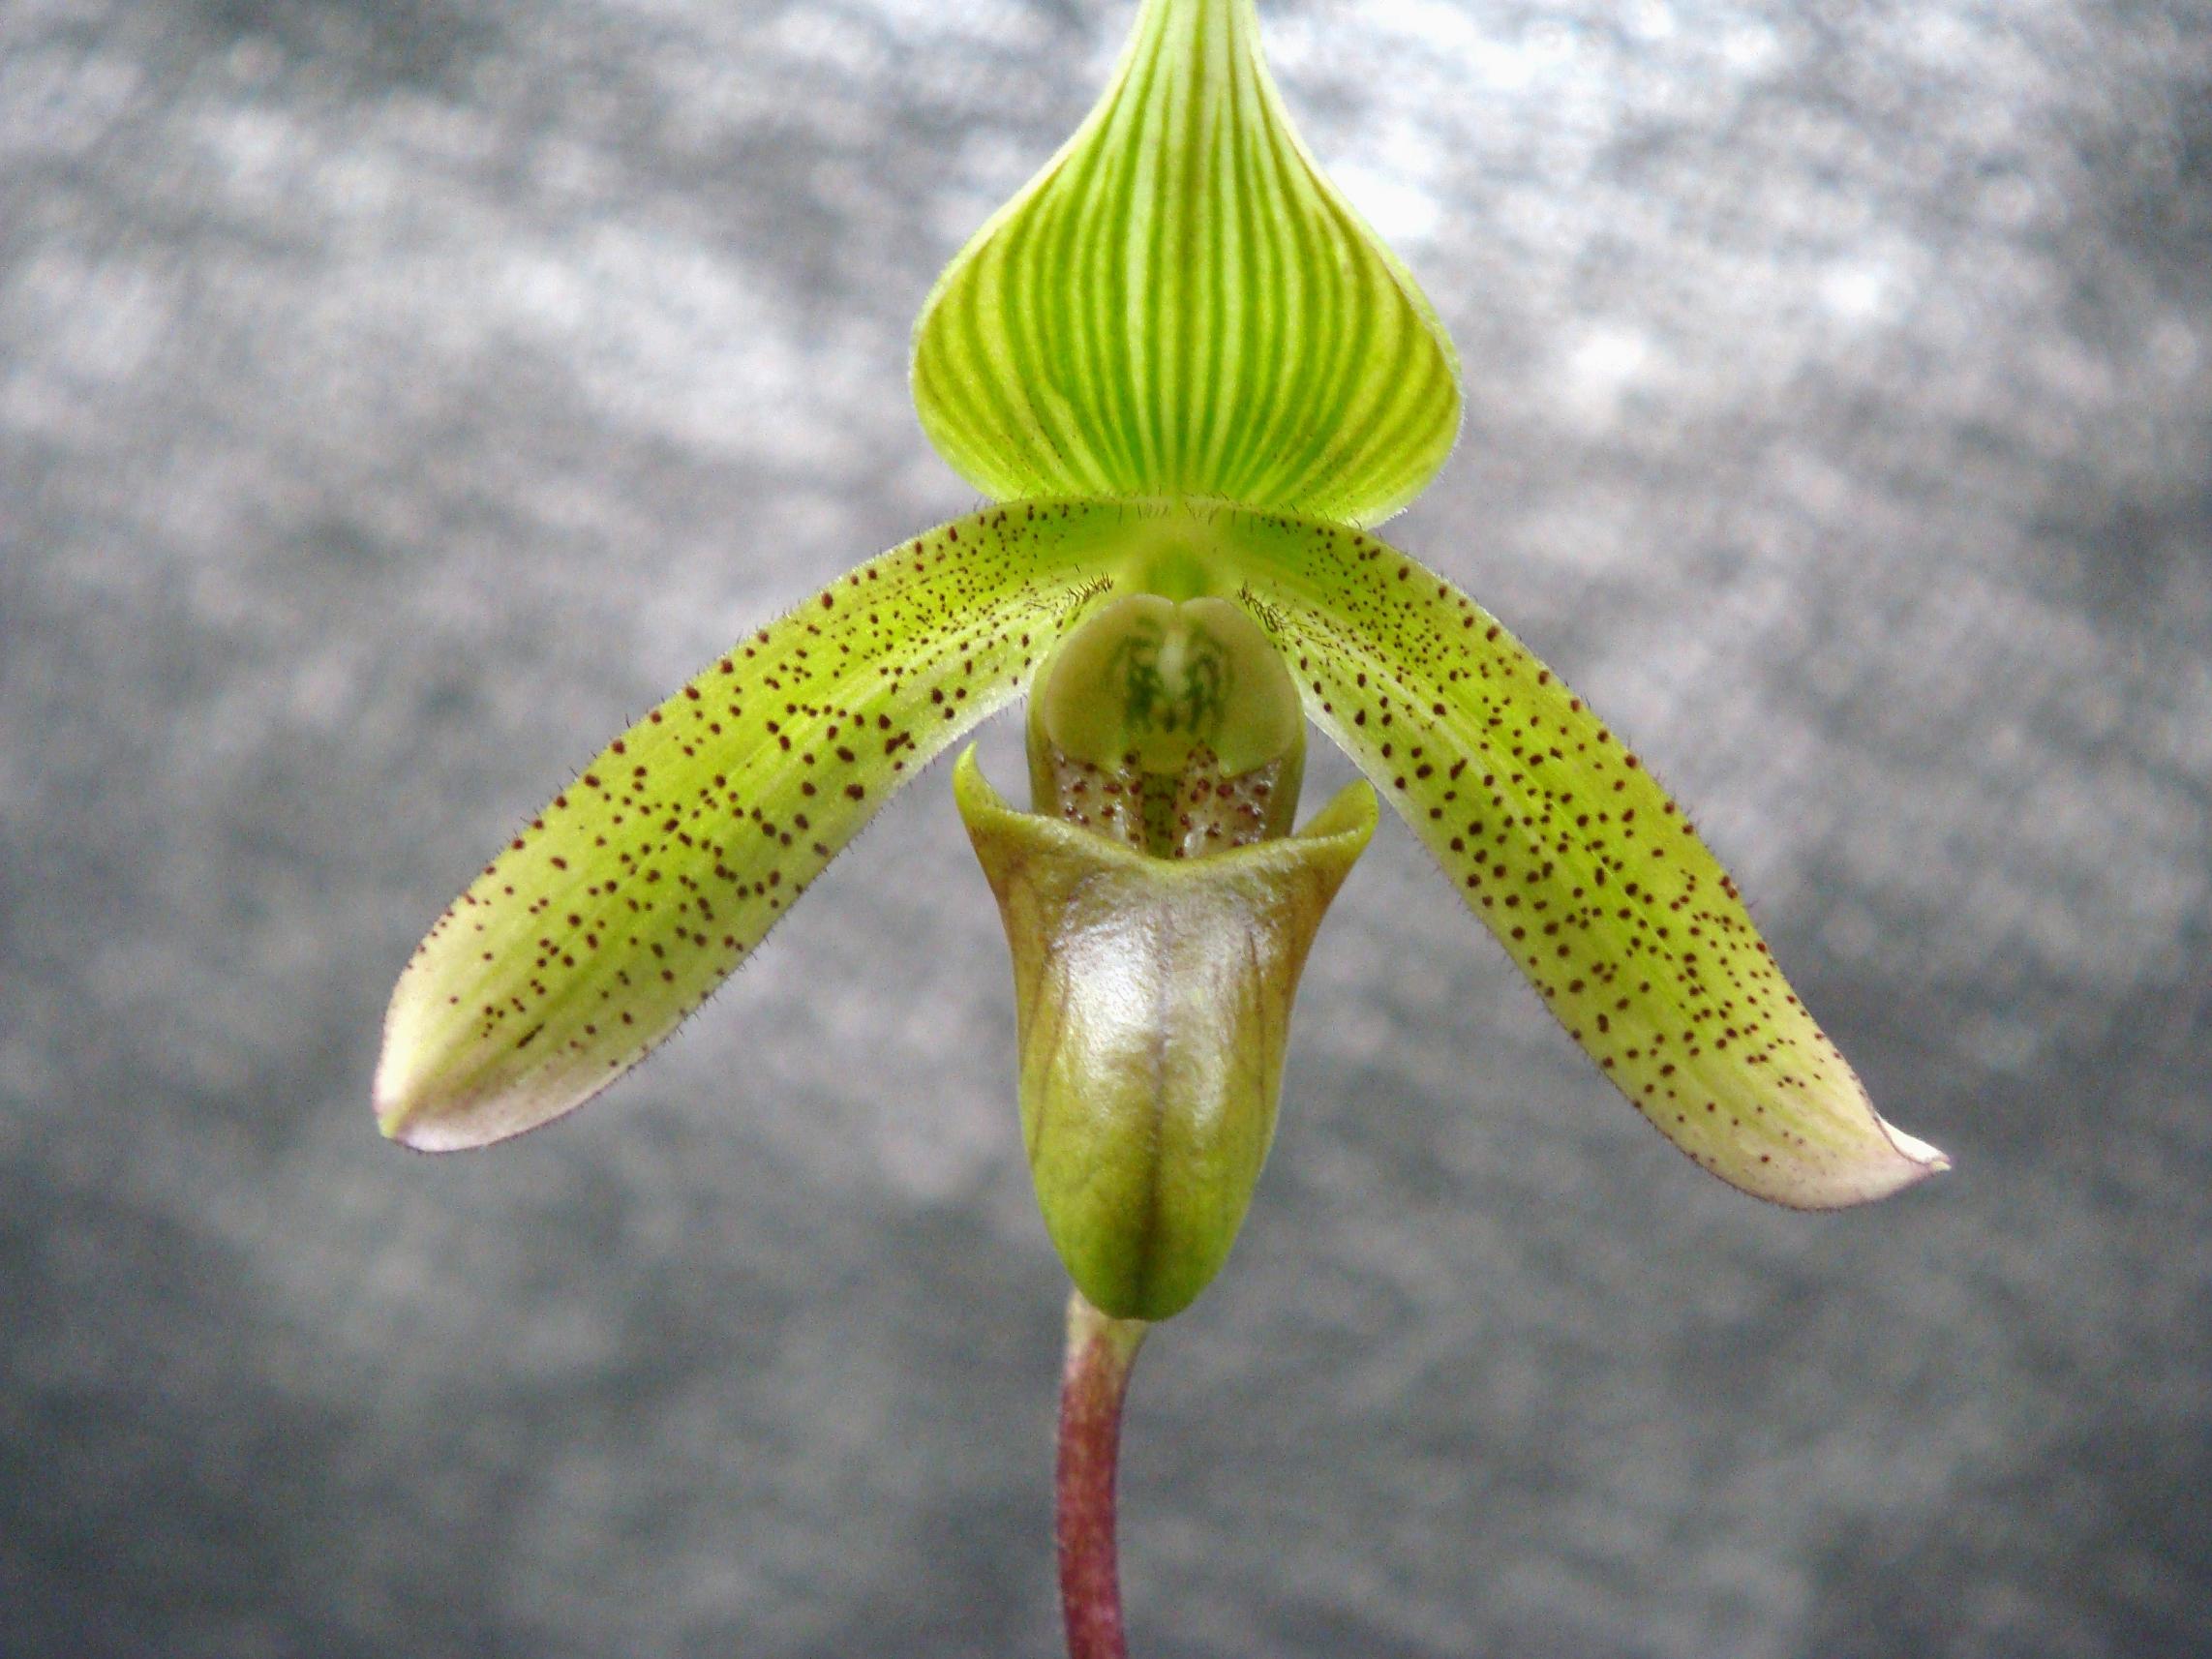 http://orchids.la.coocan.jp/Paphiopedilum/Paphiopedilum%20javanicum/DSC03360.JPG